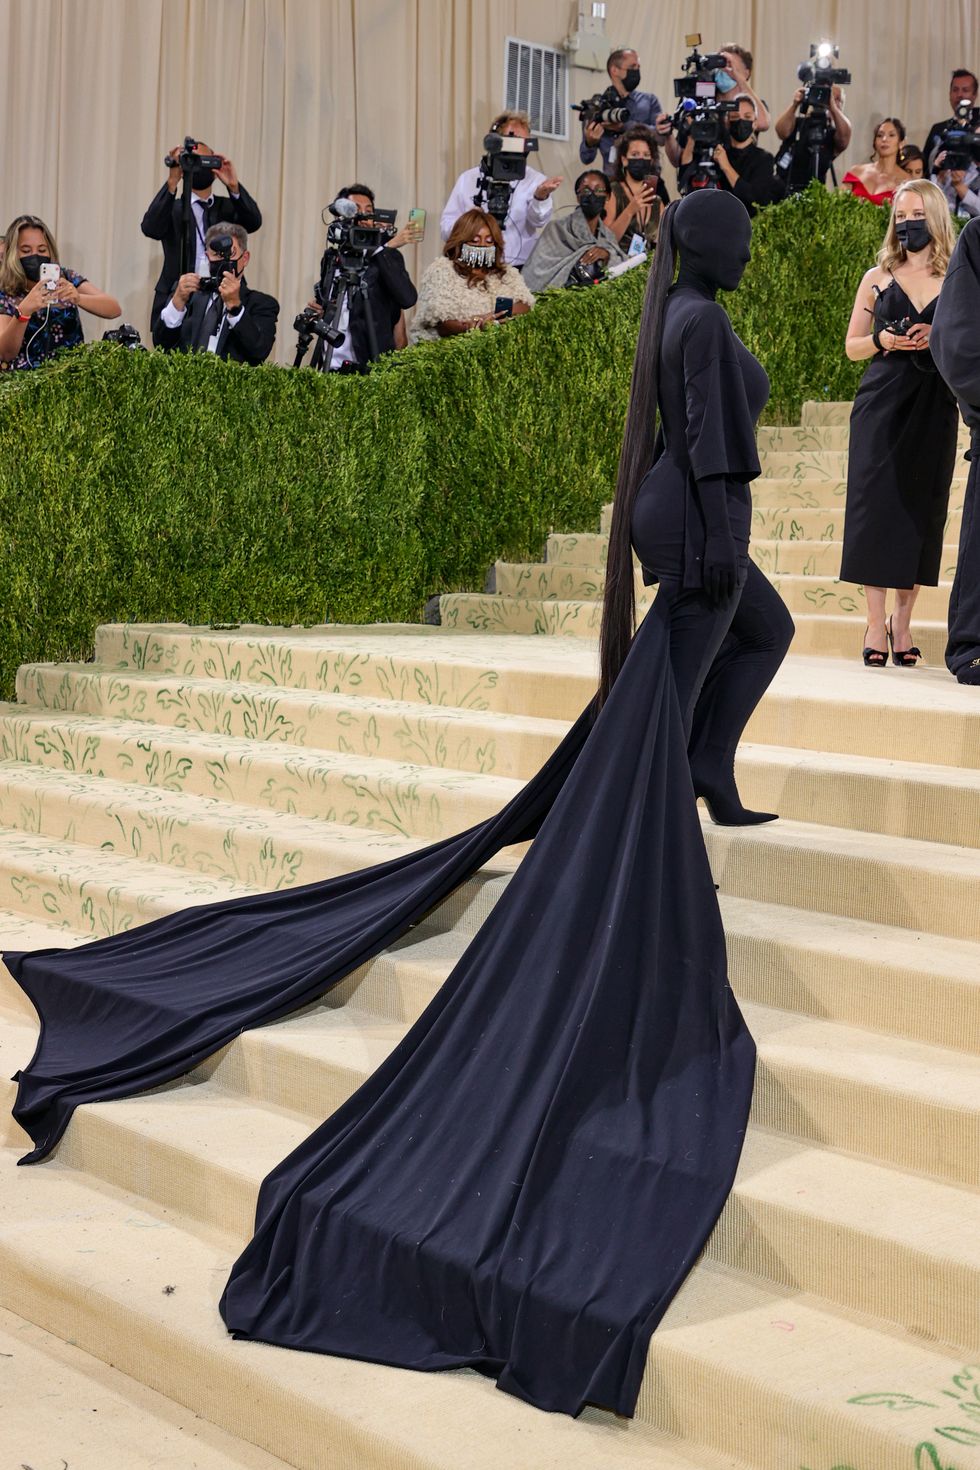 Met Gala 2021 Red Carpet Highlights: Kim Kardashian Dons Masked